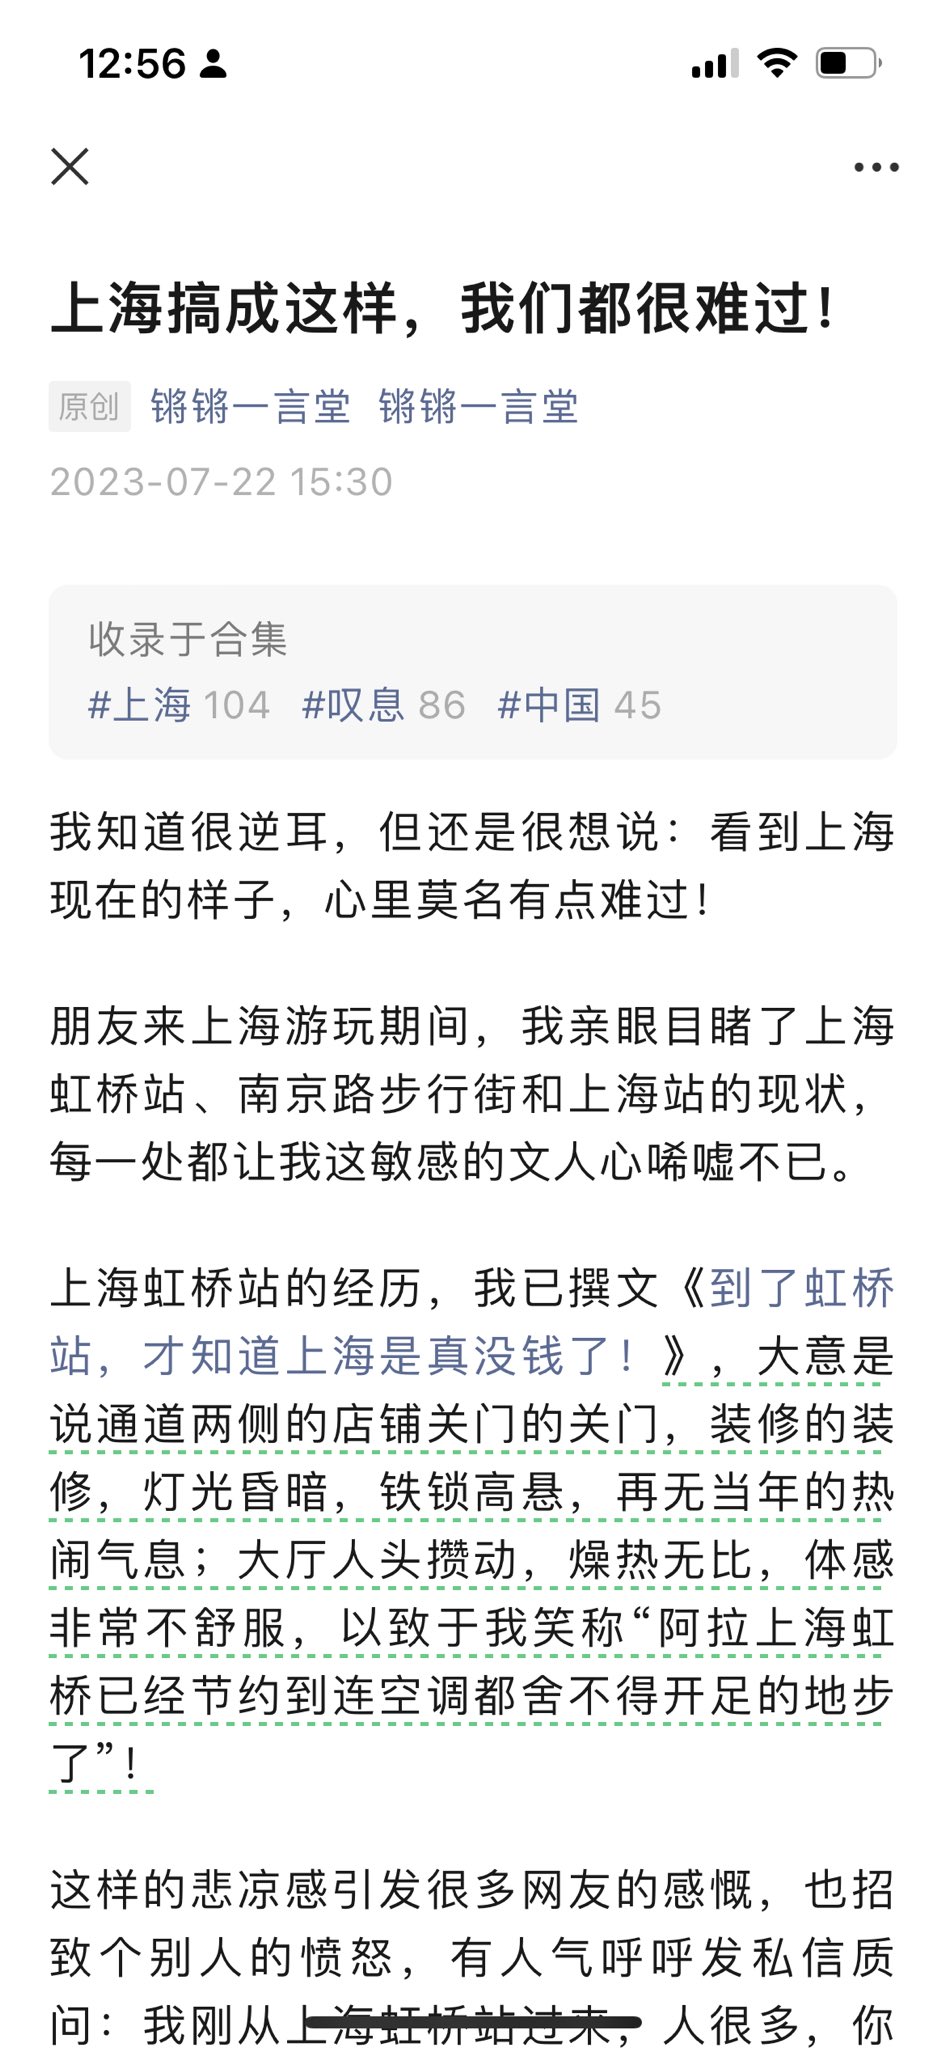 “上海搞成这样 很难过” 网文引发民热议